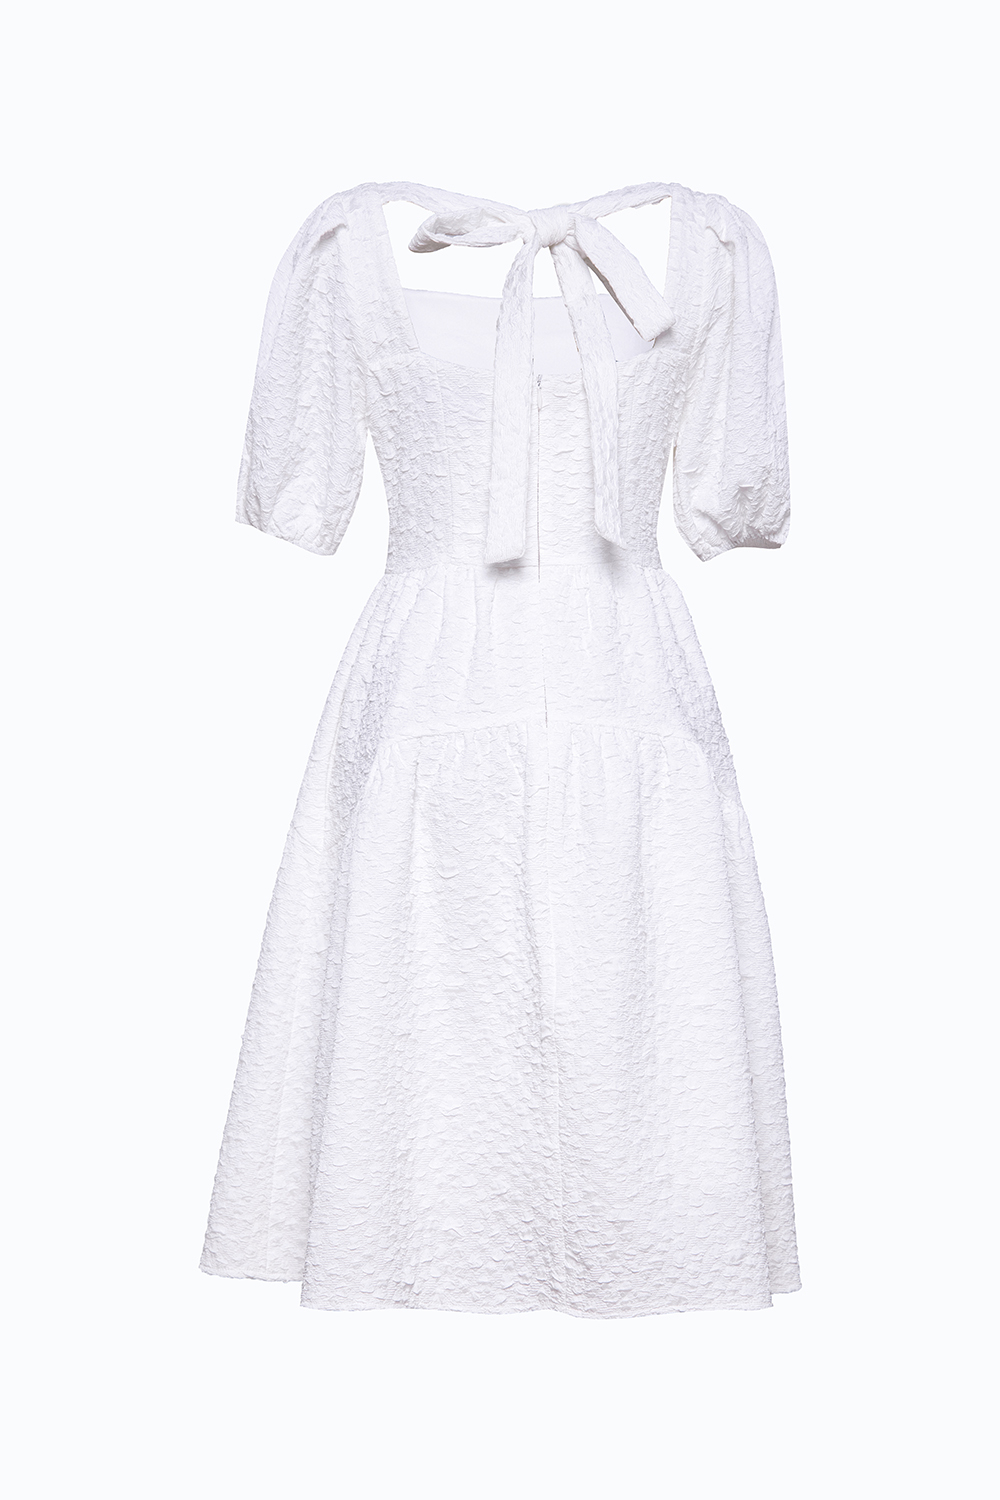 Đầm trắng babydoll cổ vuông tay phồng HL21-26 | Thời trang công sở ...